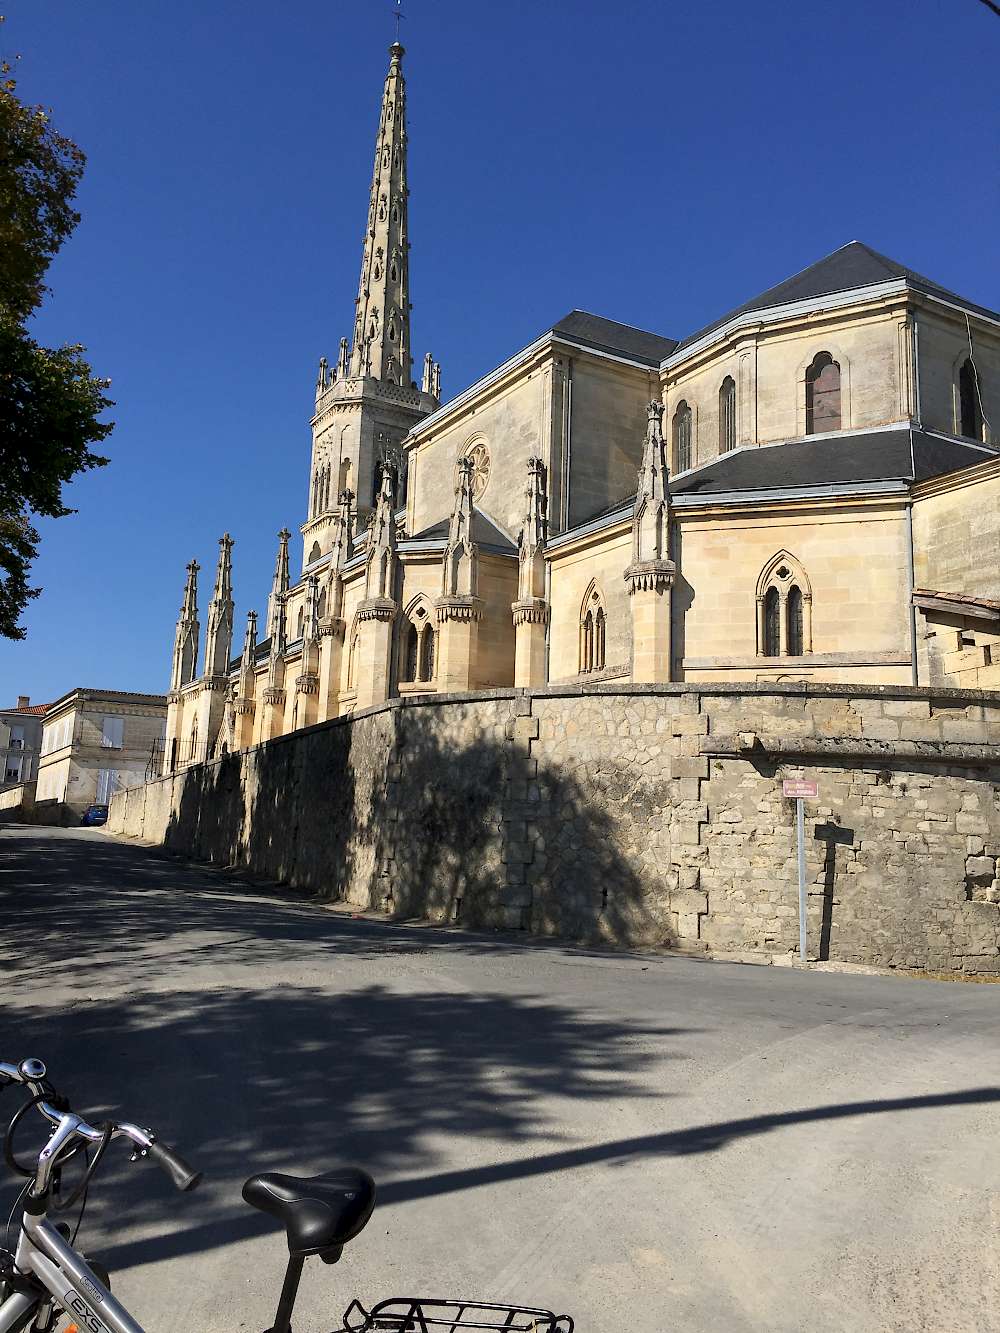 Cathedral St. Julien